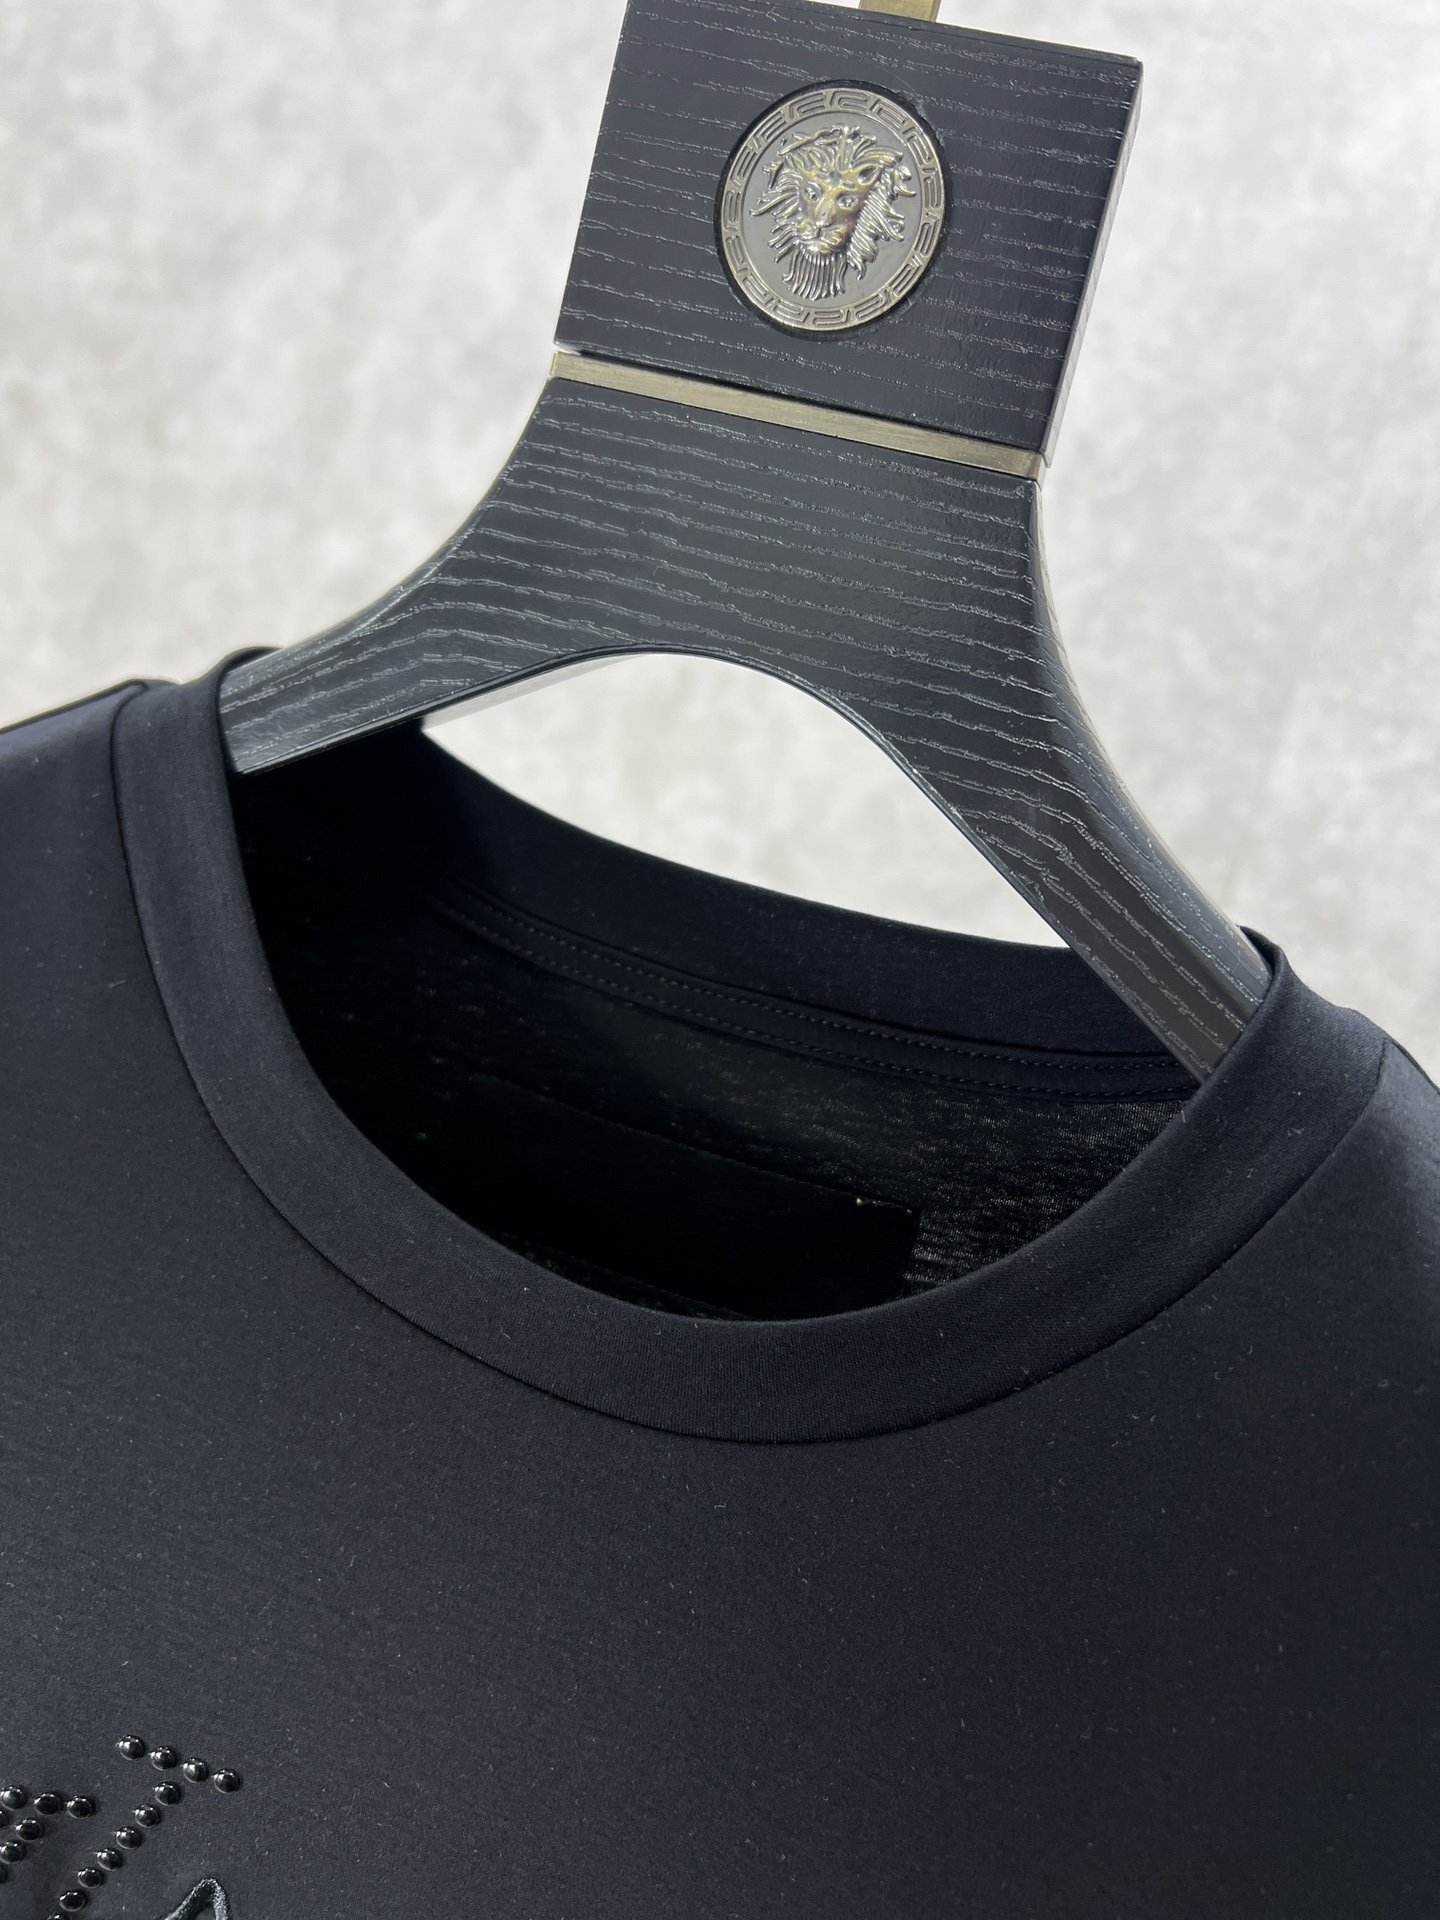 v2024ss最新款圆领短袖T恤上身效果面料重工印花定制定染螺纹领口不易变形手感非常舒服超级百搭好看的一